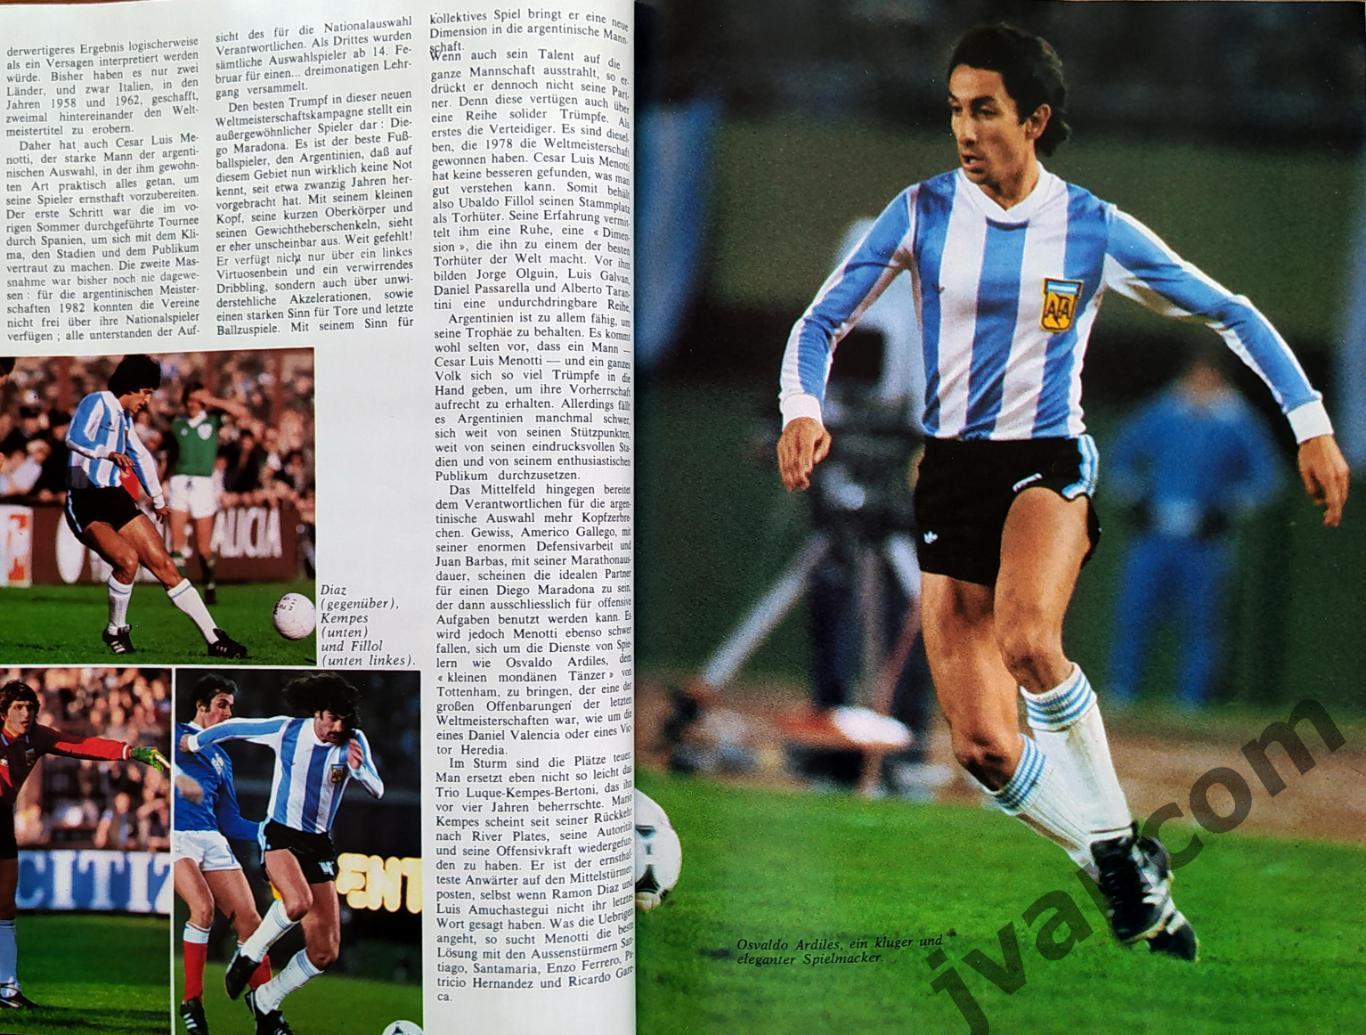 World Cup Spanien-82 / Чемпионат Мира по футболу*82 в Испании. Превью команд. 4